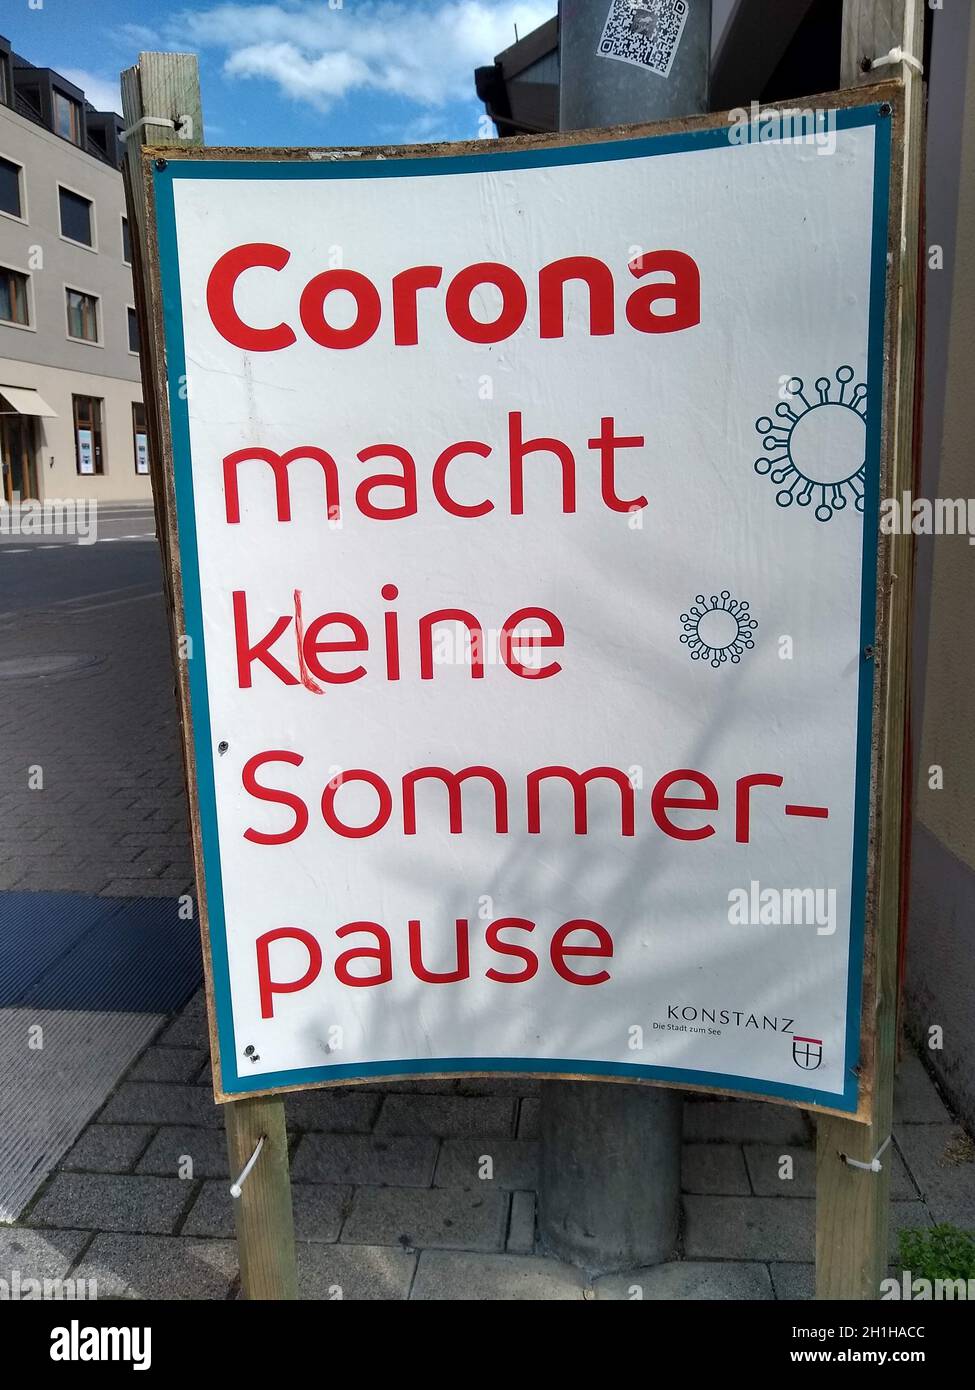 Corona macht keine Sommerpause - Hinweistafel soll Touristen in der Stadt Konstanz zur Achtsamkeit mahnen  Themenbild Reise Coronakrise Stock Photo